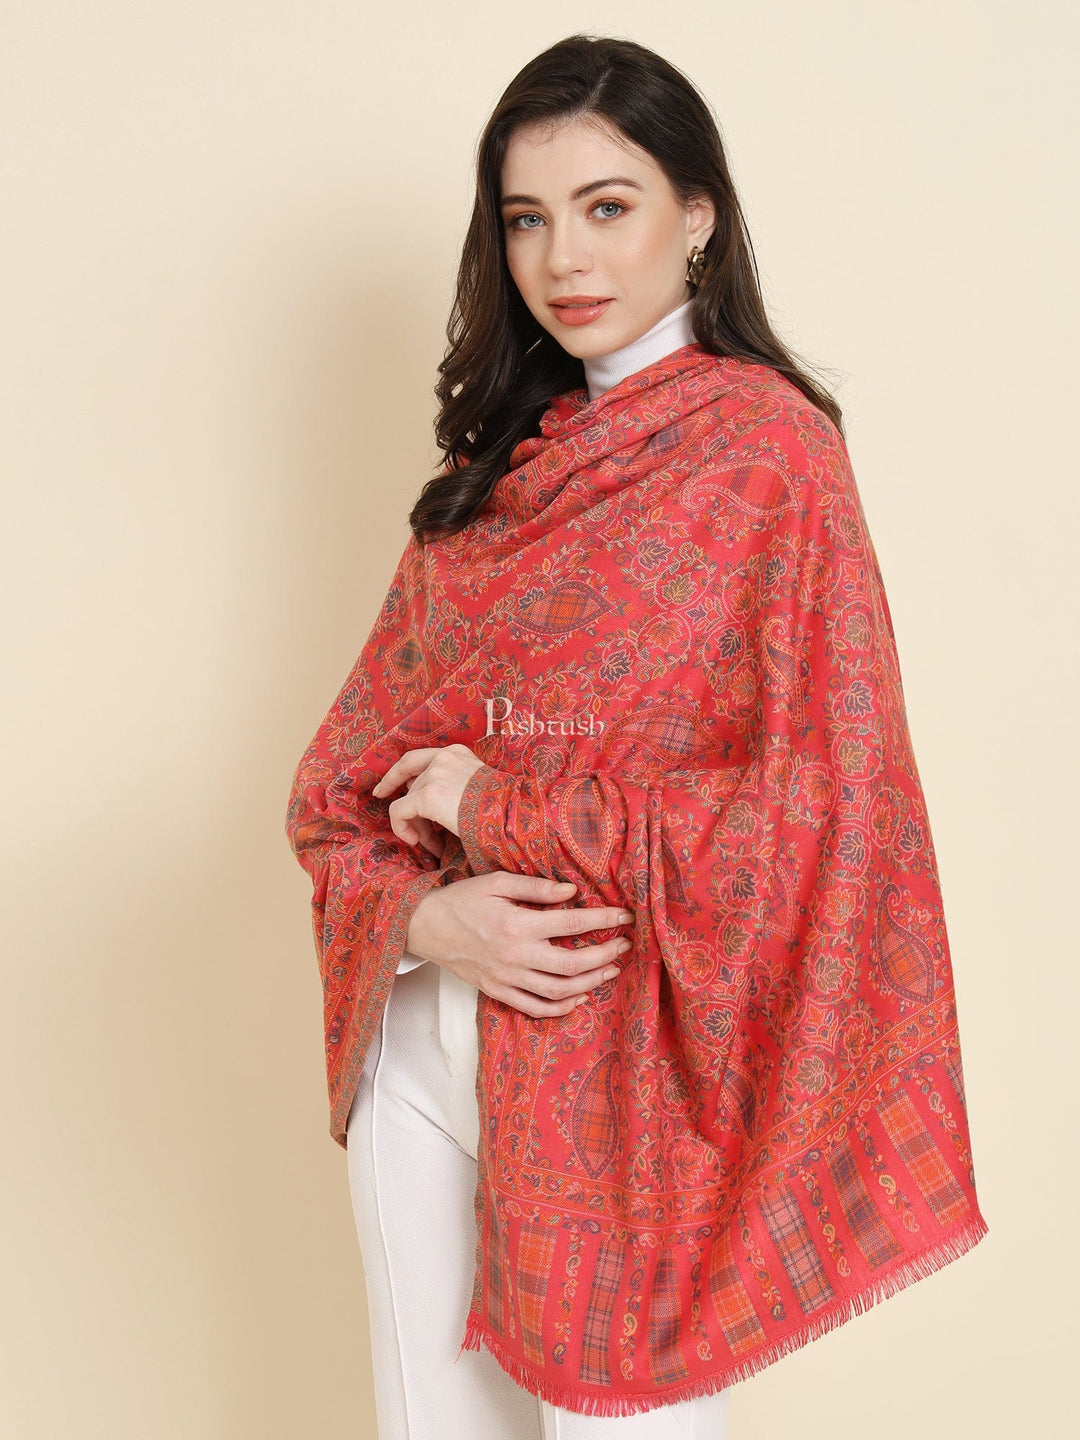 Pashtush India Womens Shawls Pashtush Womens Faux Pashmina Shawl, Paisley Ethnic Woven Design, Rose